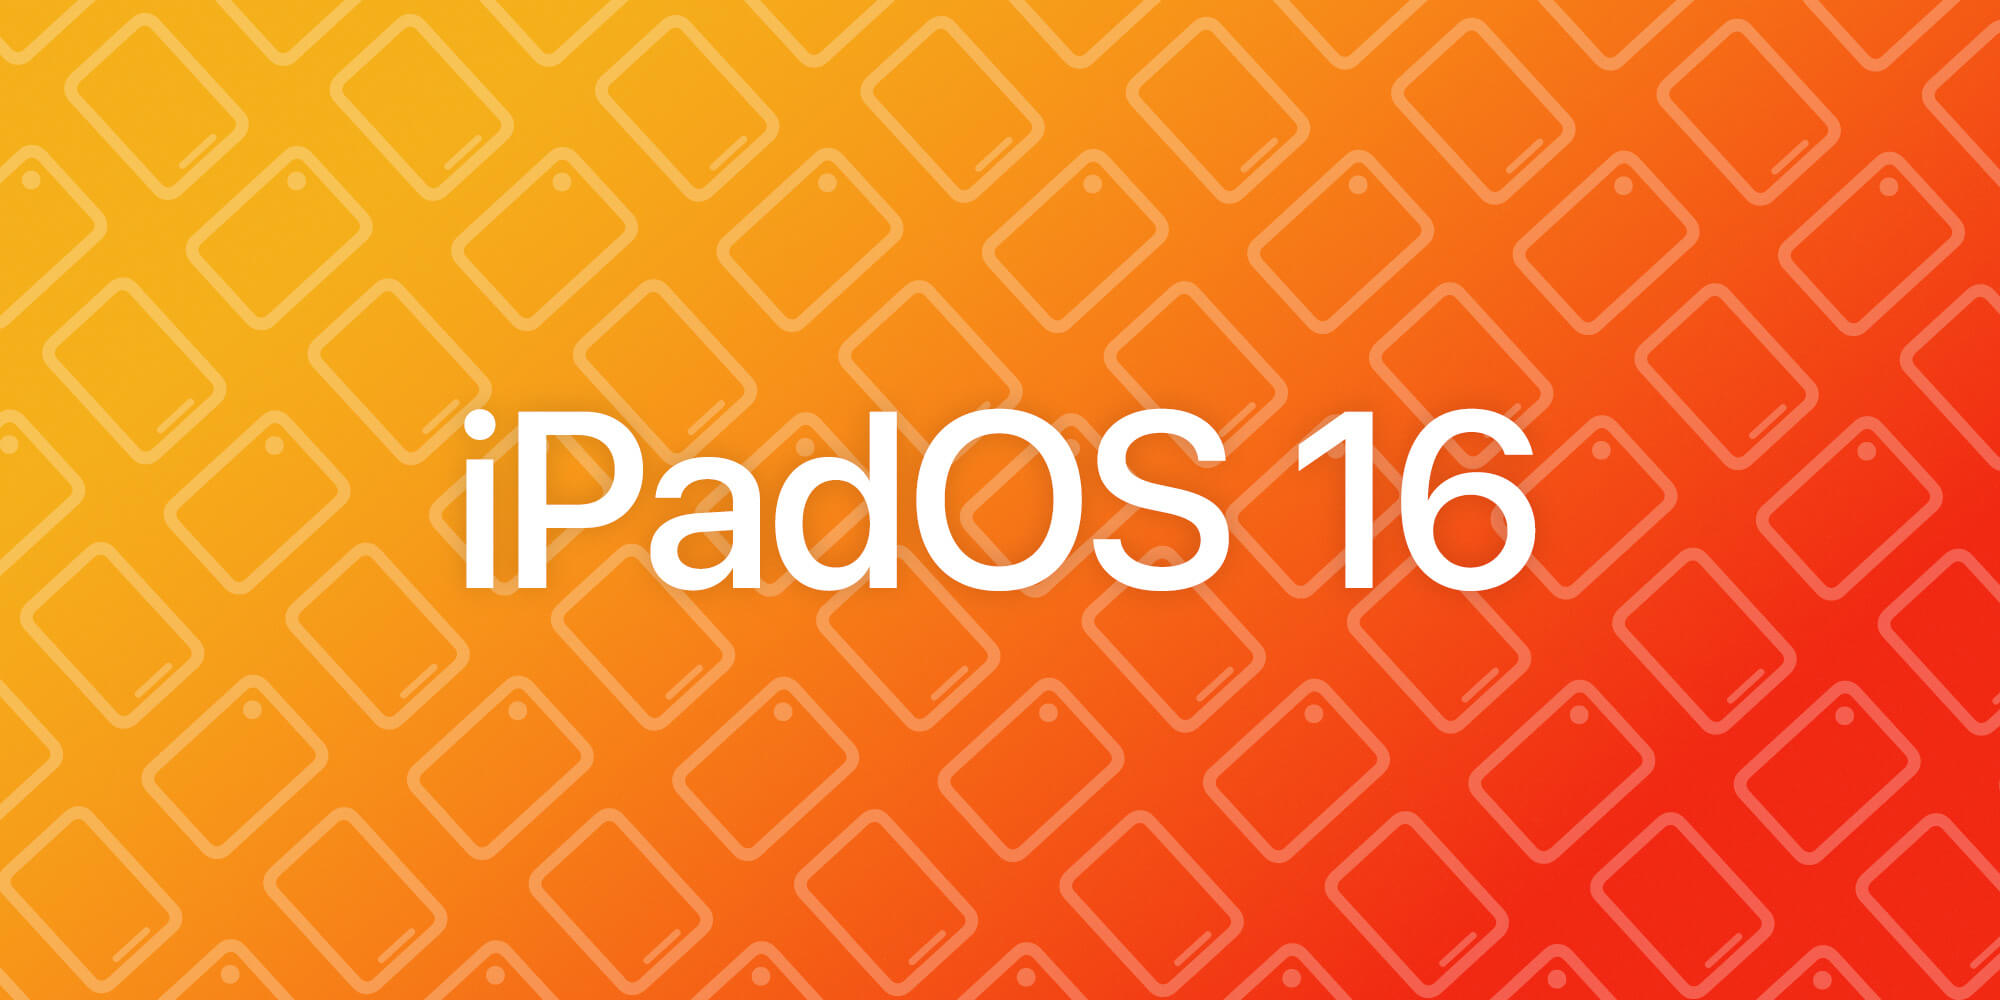 iPadOS 16 WWDC 2022